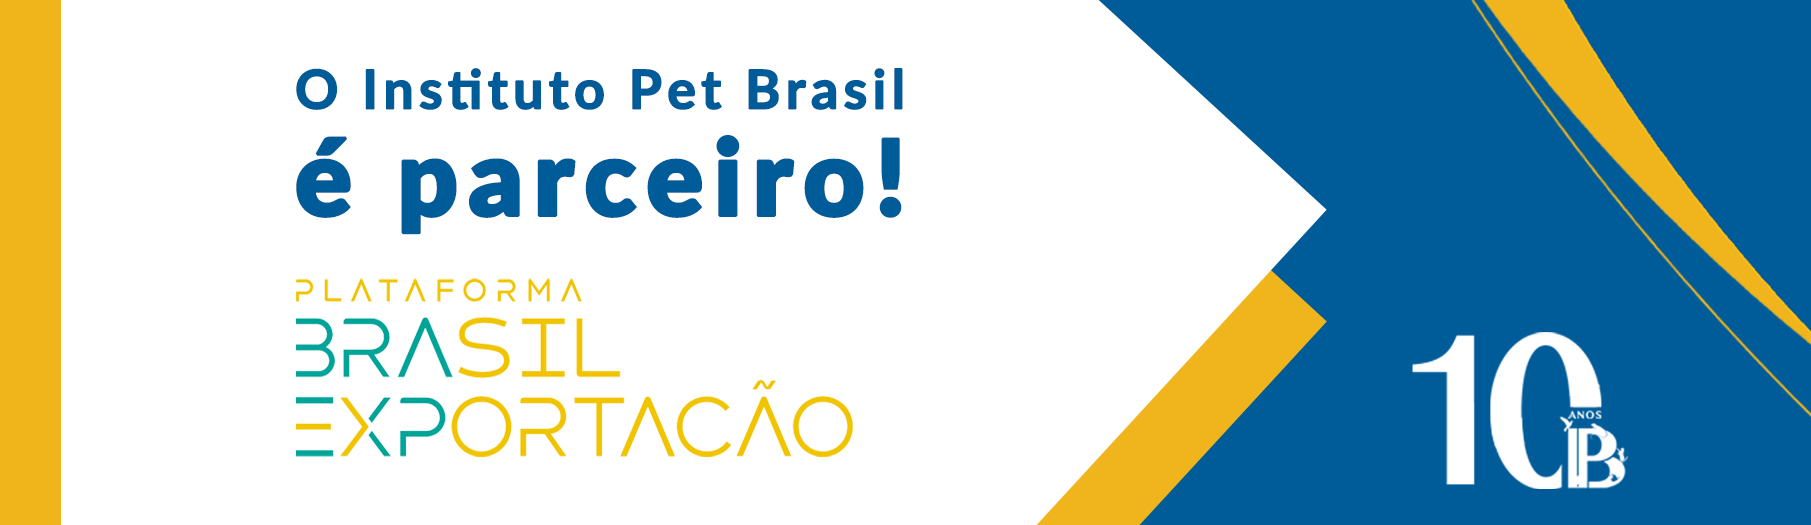 Instituto Pet Brasil - IPB